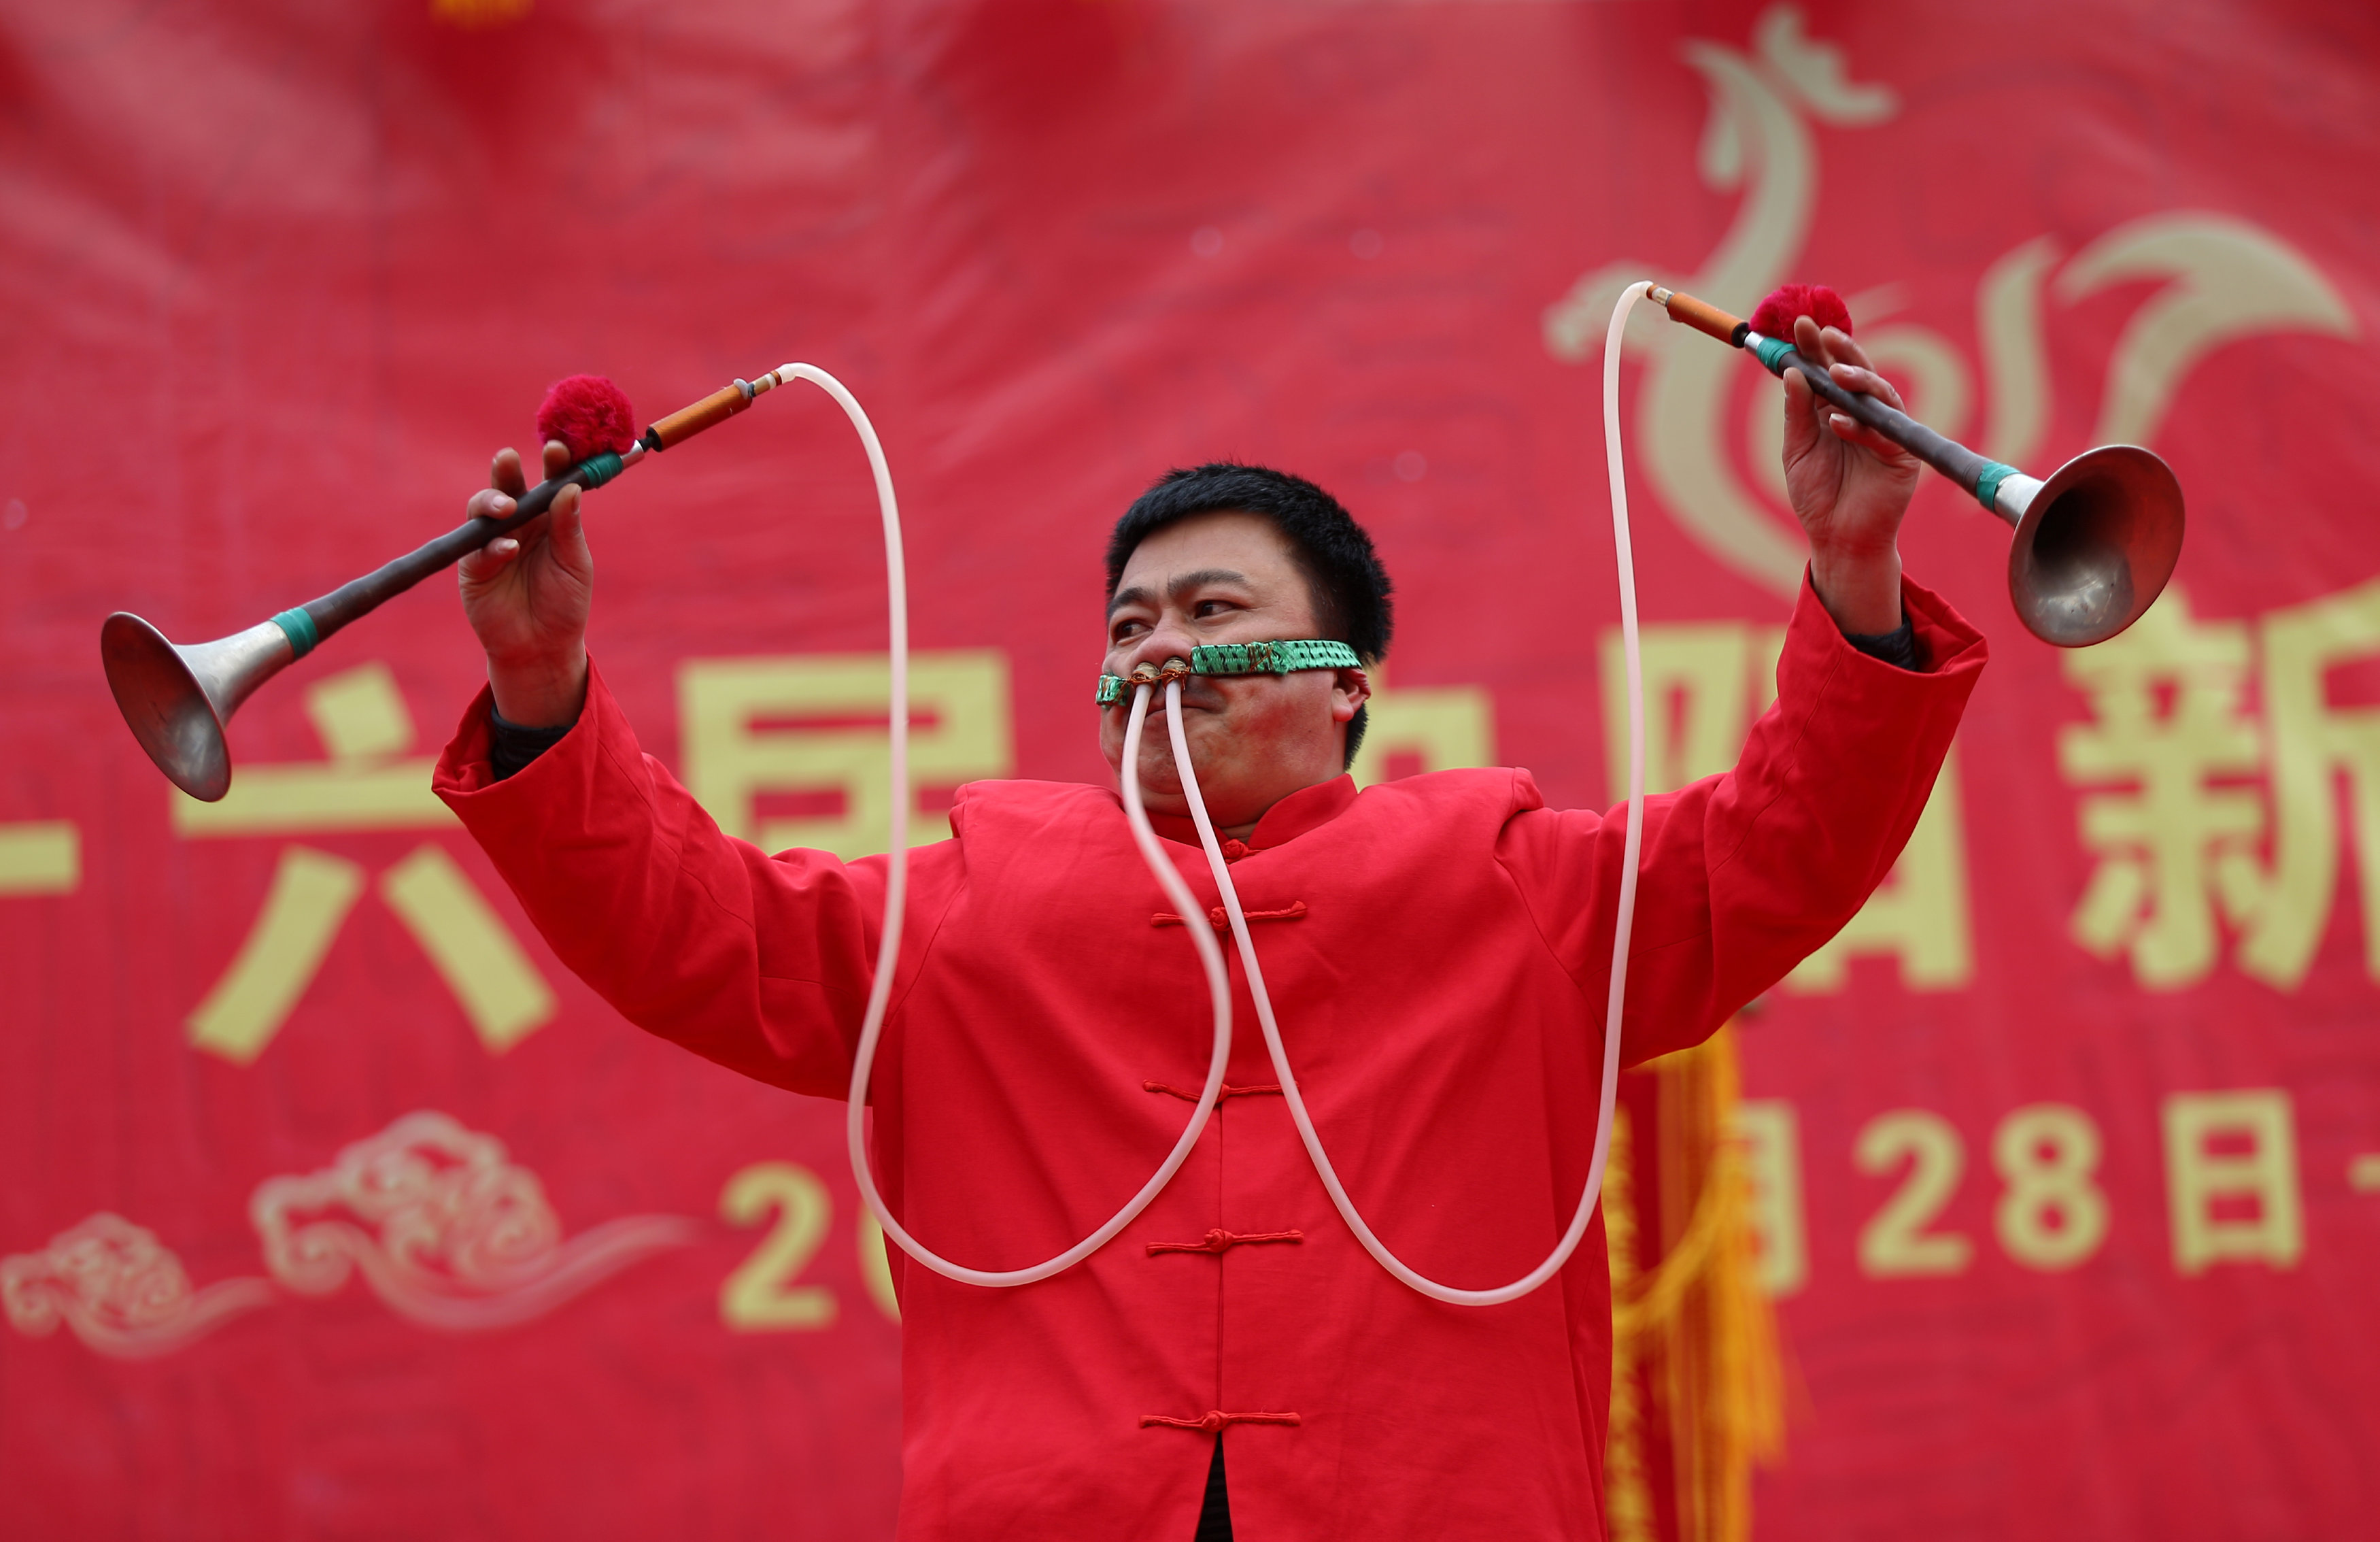 ممثل محلى يقدم عروض فنية فى شنجهاى احتفالًا بالسنة القمرية الجديدة